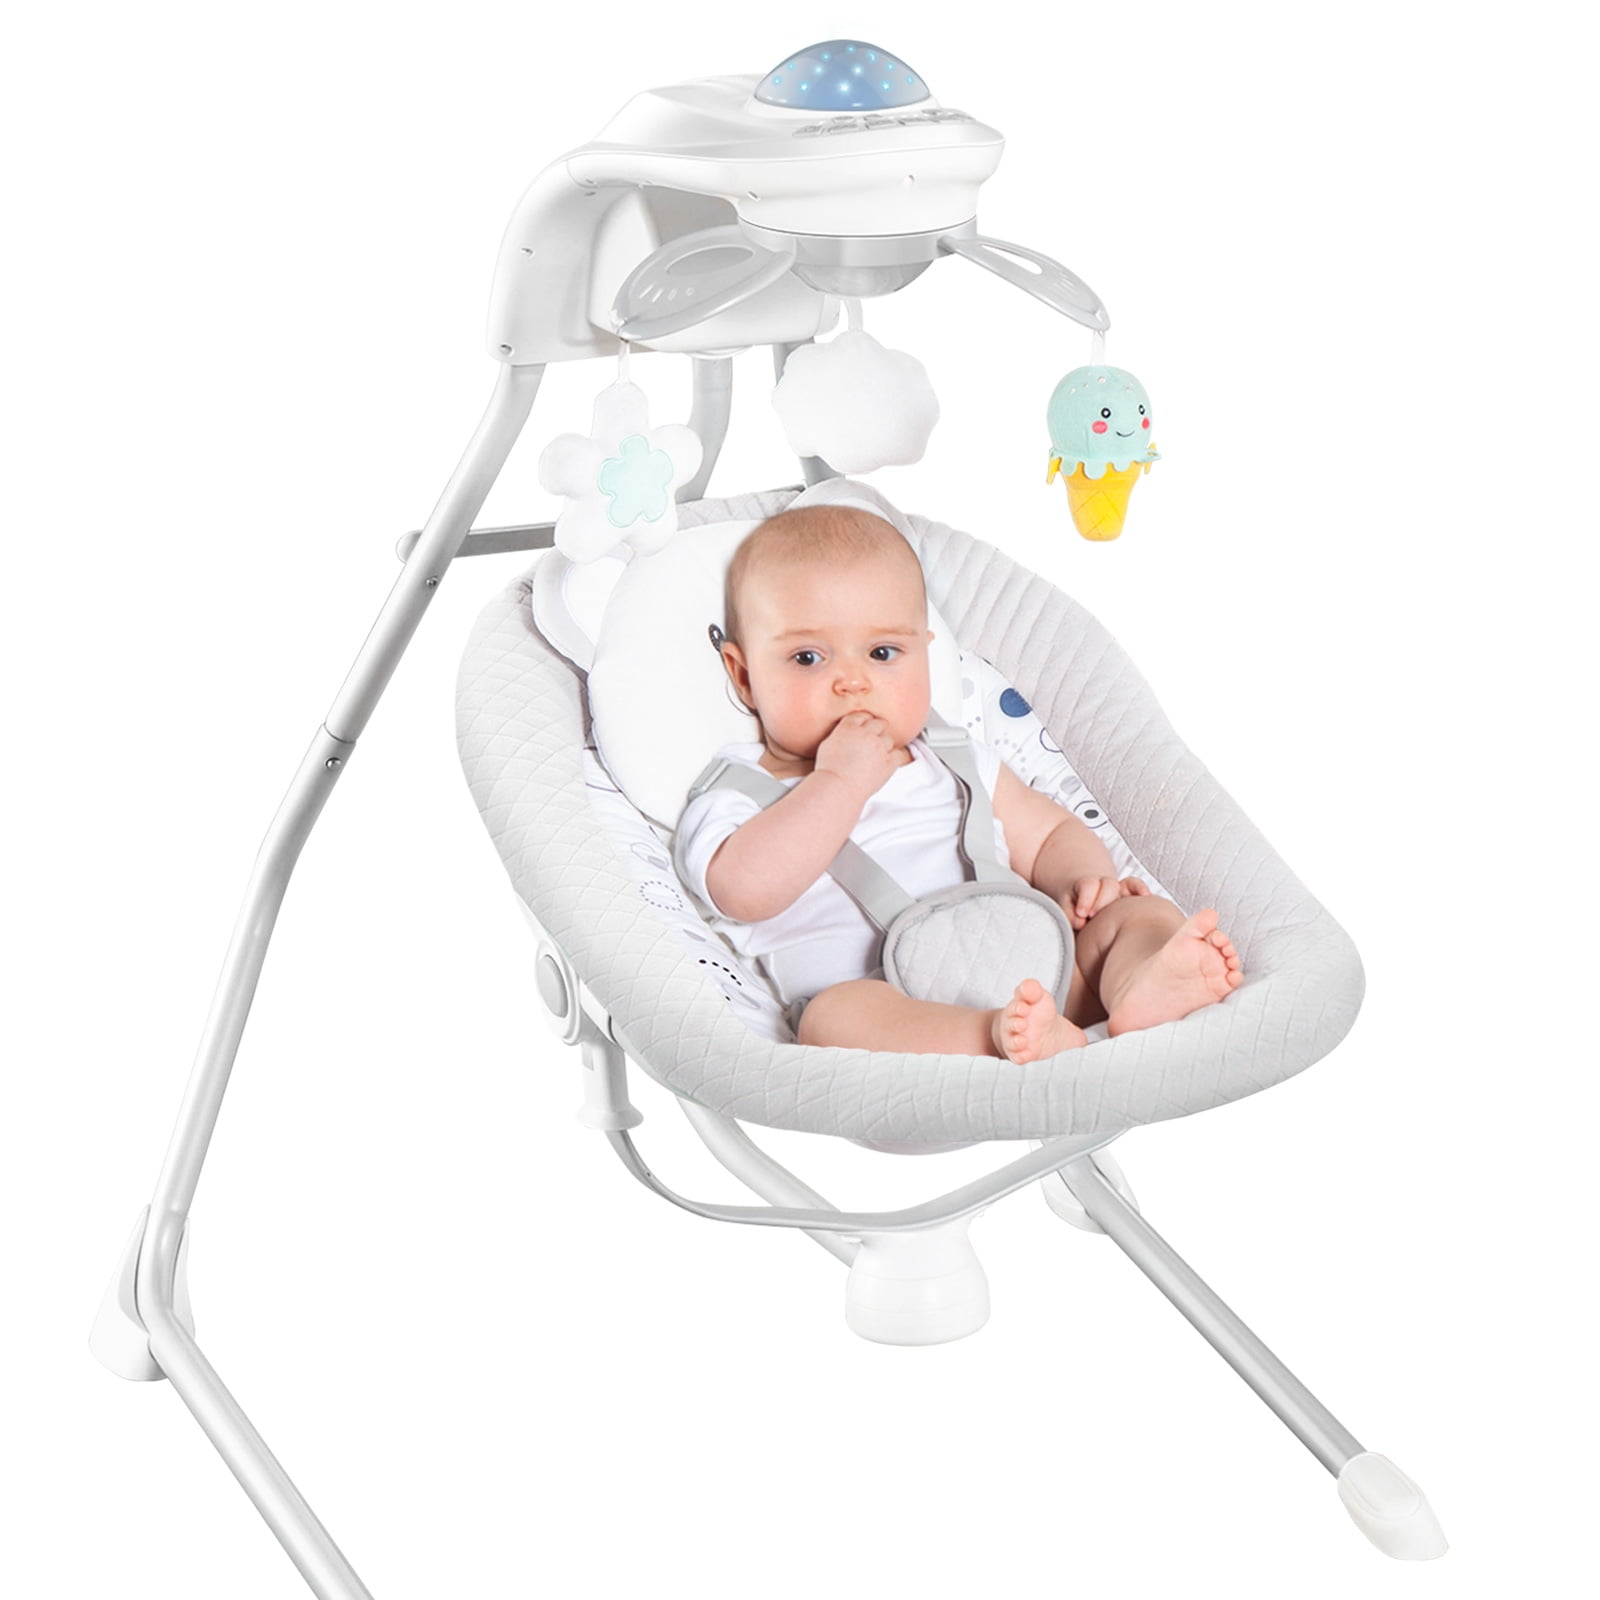 Tcaijing Baby swing smart electric swing chair cradle rocking crib baby rocking bed sleeping artifact